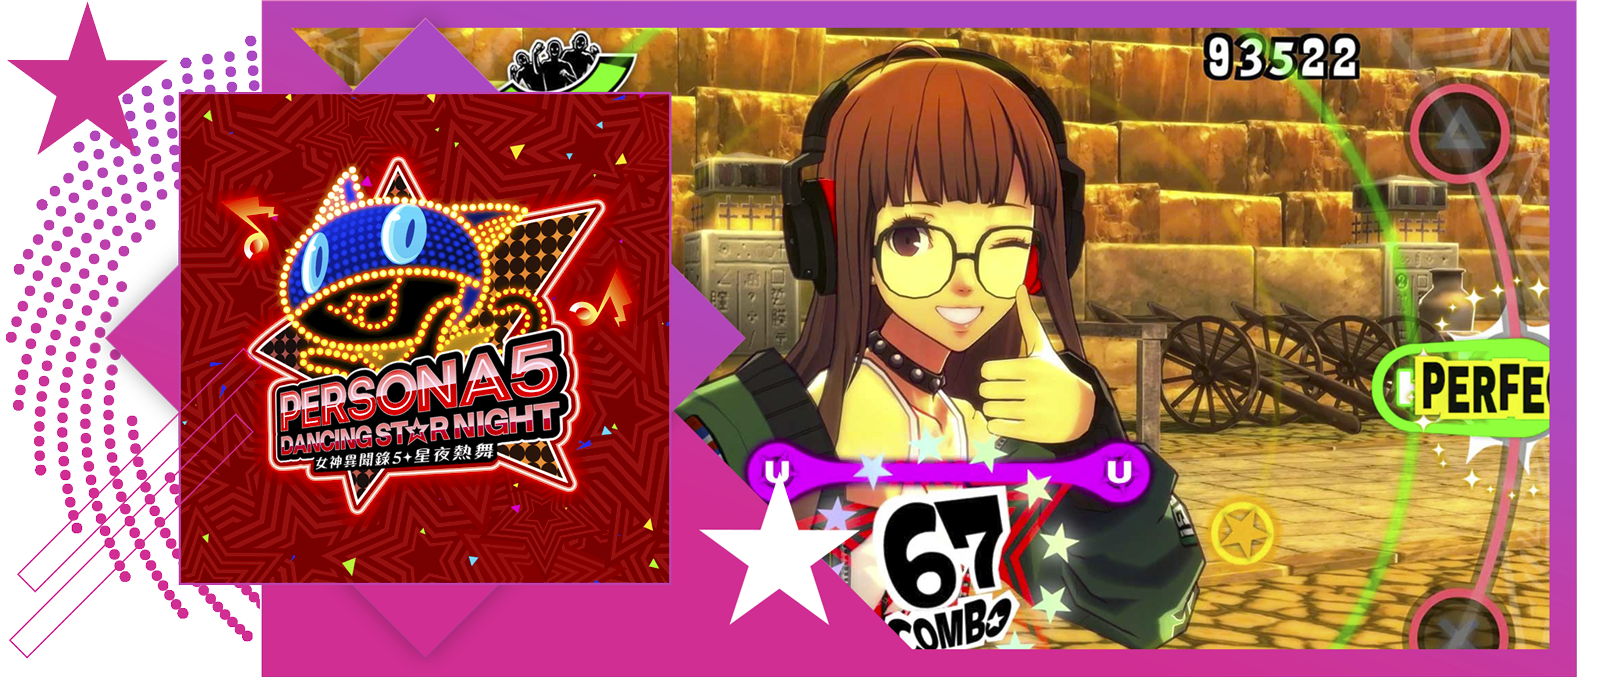 最佳节奏游戏的特色图像，展示《Persona 5:Dancing in Starlight》的主题宣传海报和游戏画面。